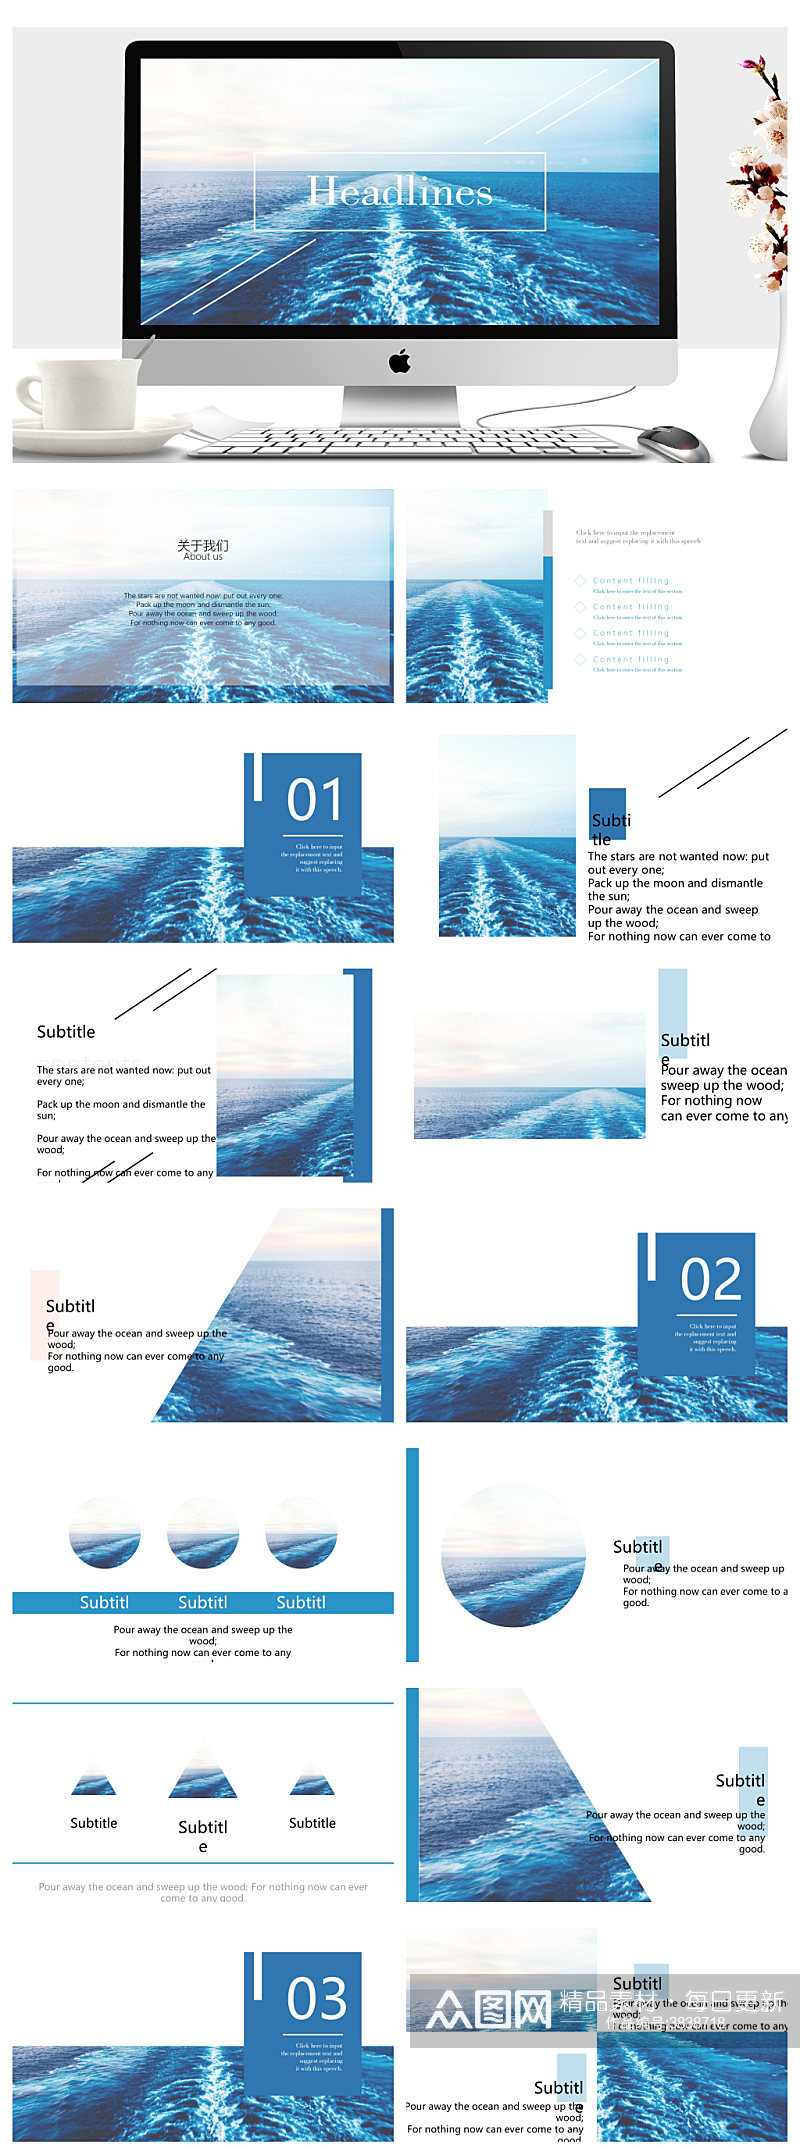 蓝色海洋主题通用商务PPT素材